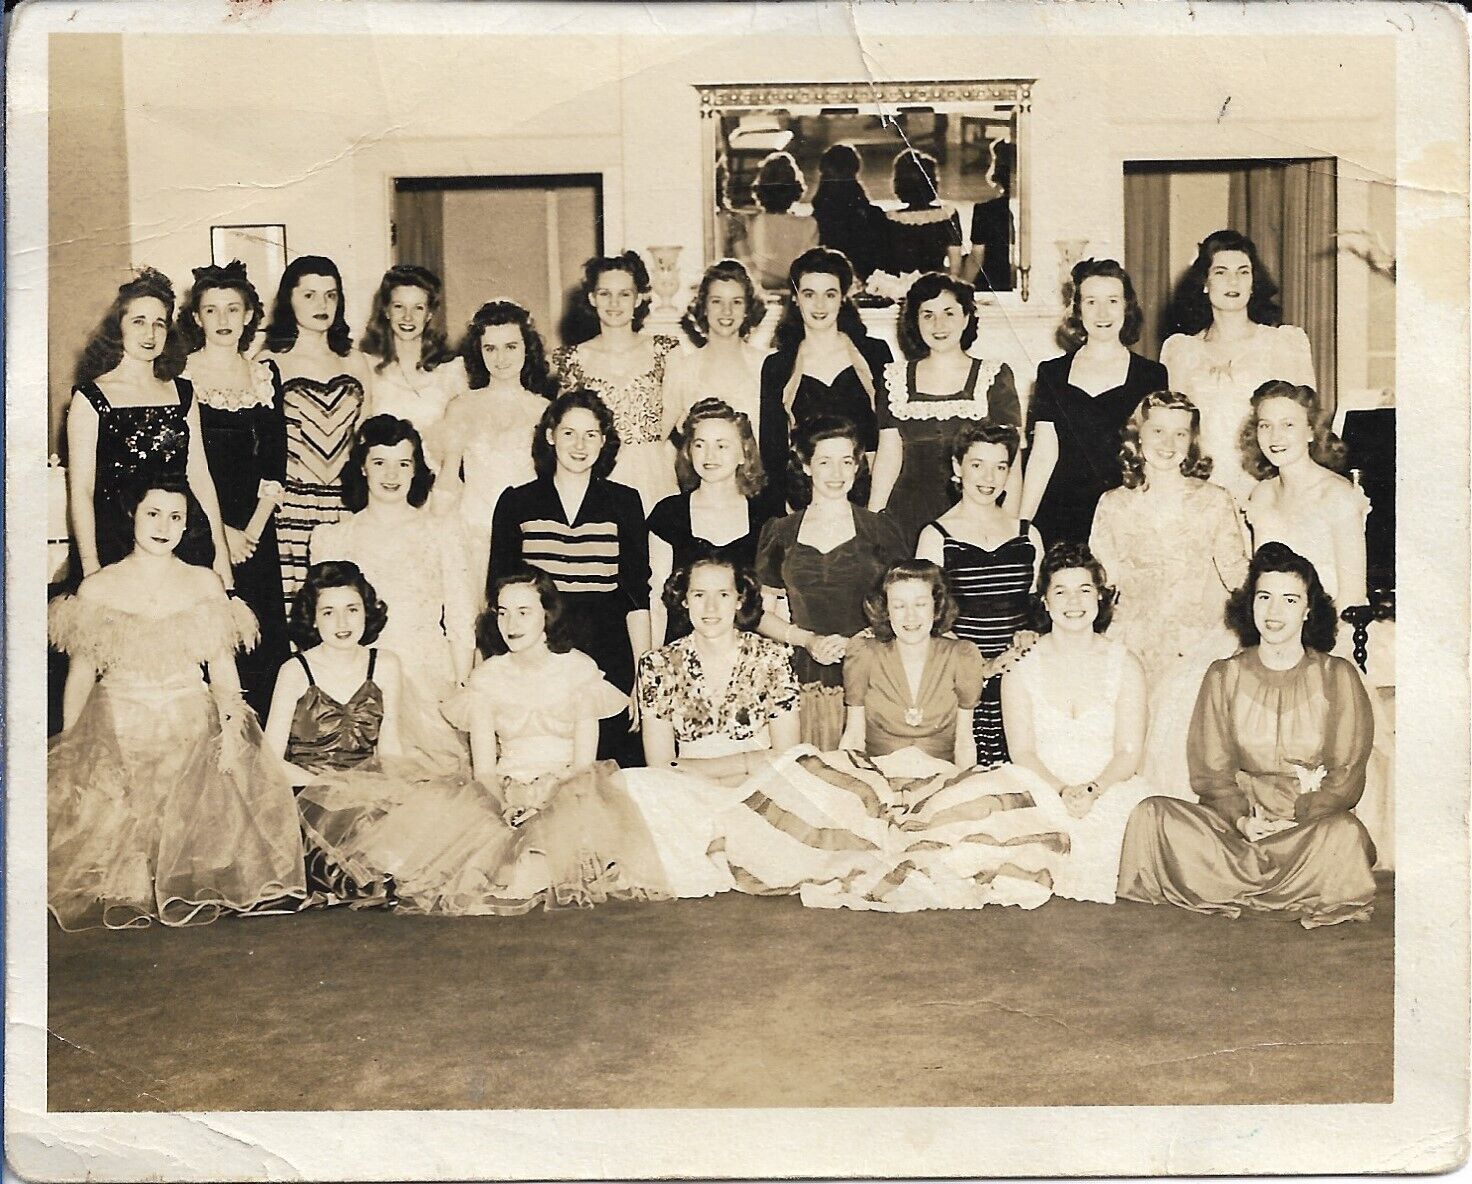 Ladies Photograph 1940s Vintage Dresses Fashion Party 4 x 4 7/8